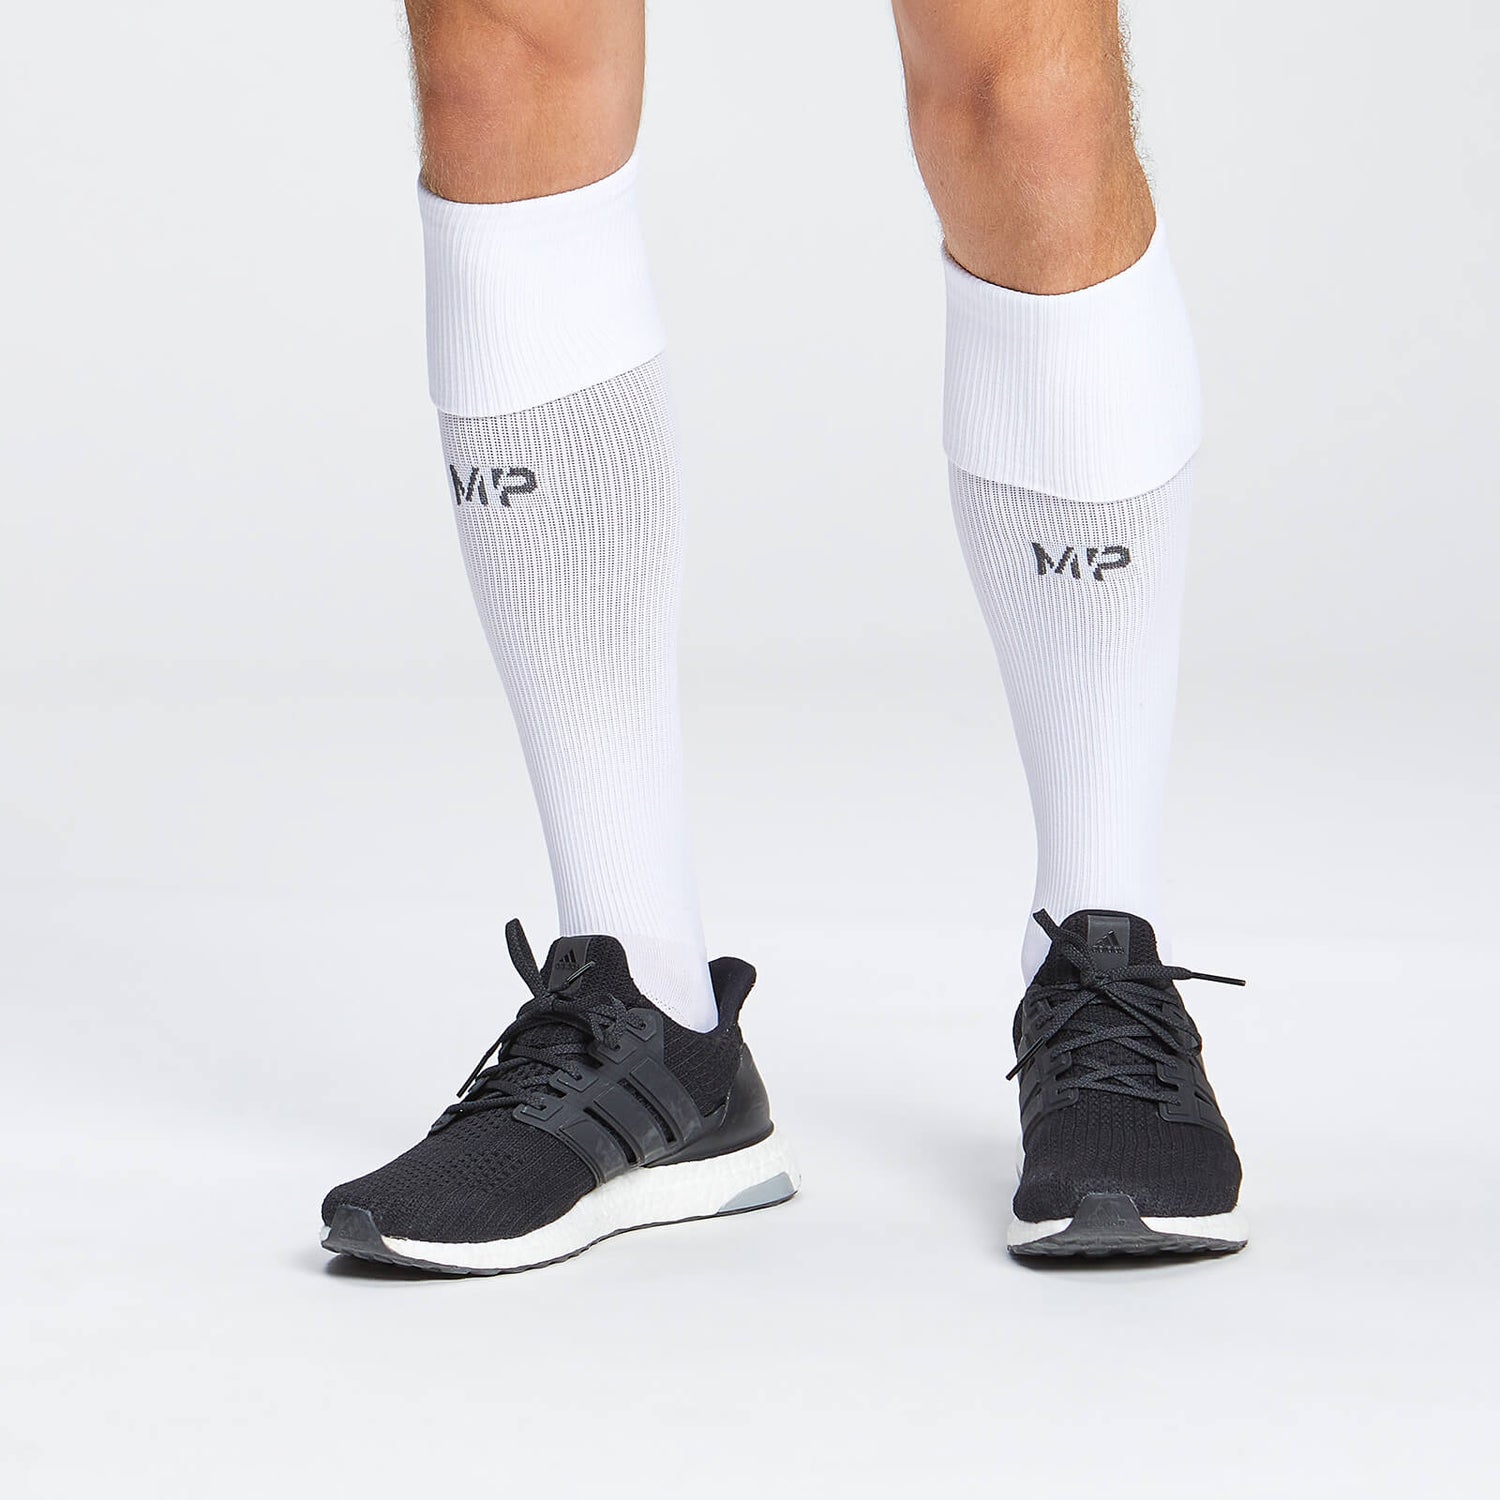 MP Fußball-Socken in voller Länge – Weiß - UK 3-6